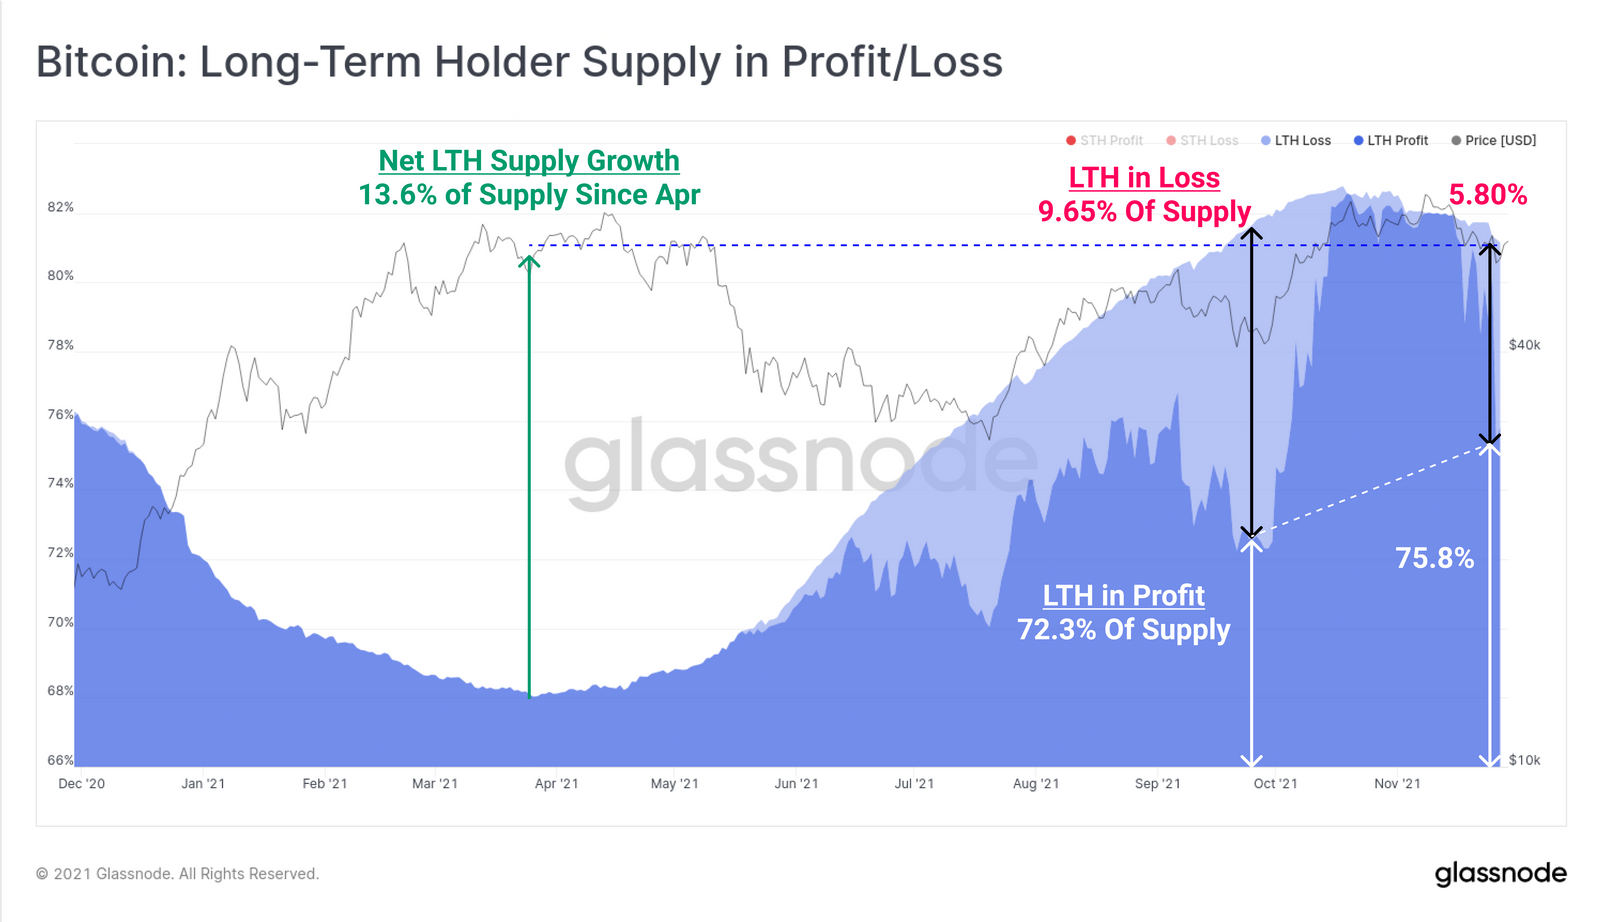 Prozentualer Anteil der Gesamtmenge im Profit/Verlust in den Händen von Langzeitinvestoren